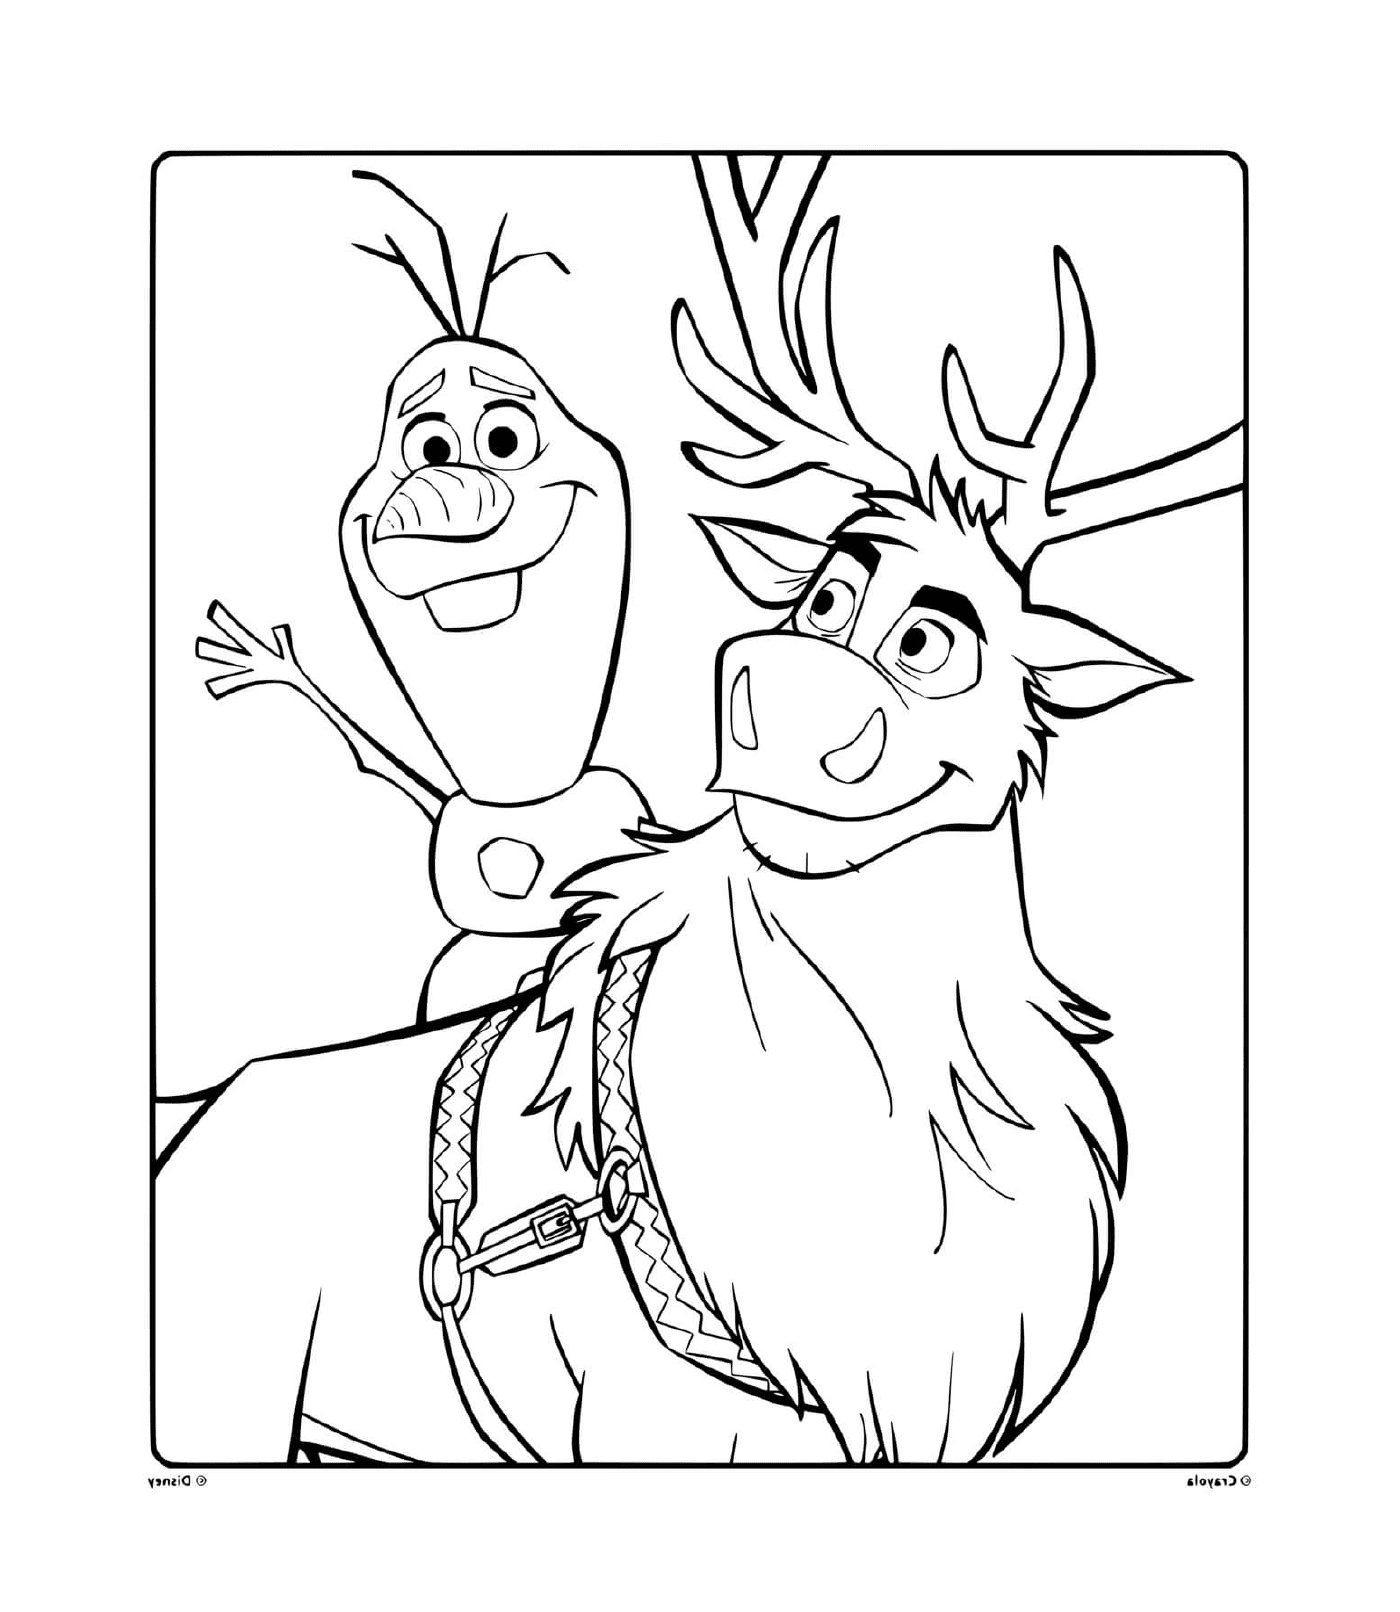  Olaf and Sven, companions 